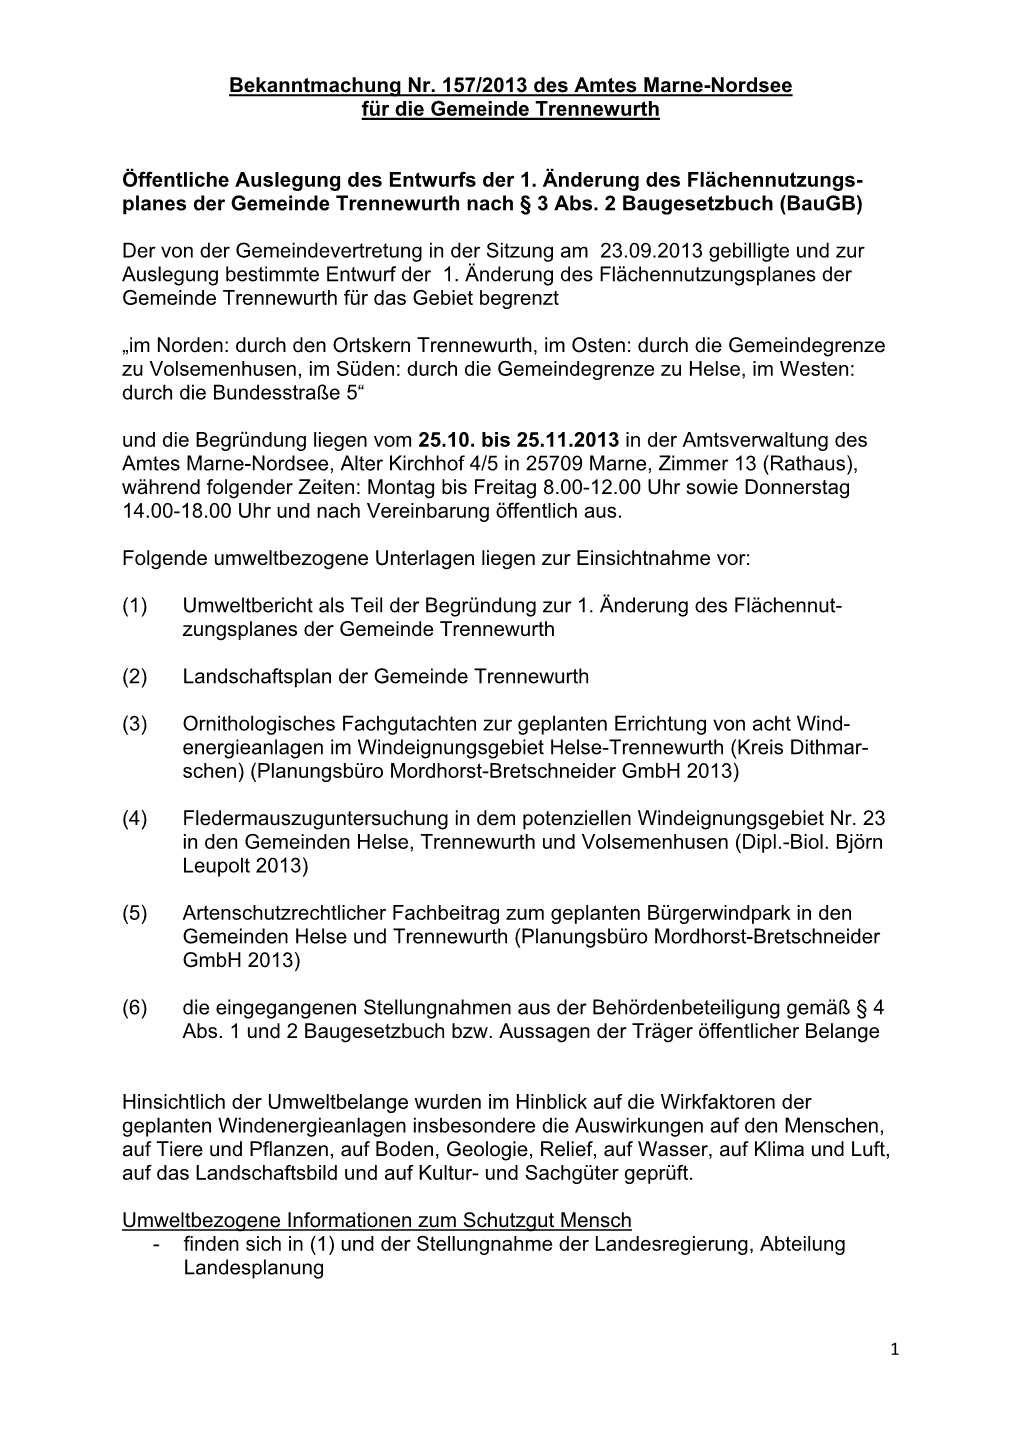 Bekanntmachung Nr. 157/2013 Des Amtes Marne-Nordsee Für Die Gemeinde Trennewurth